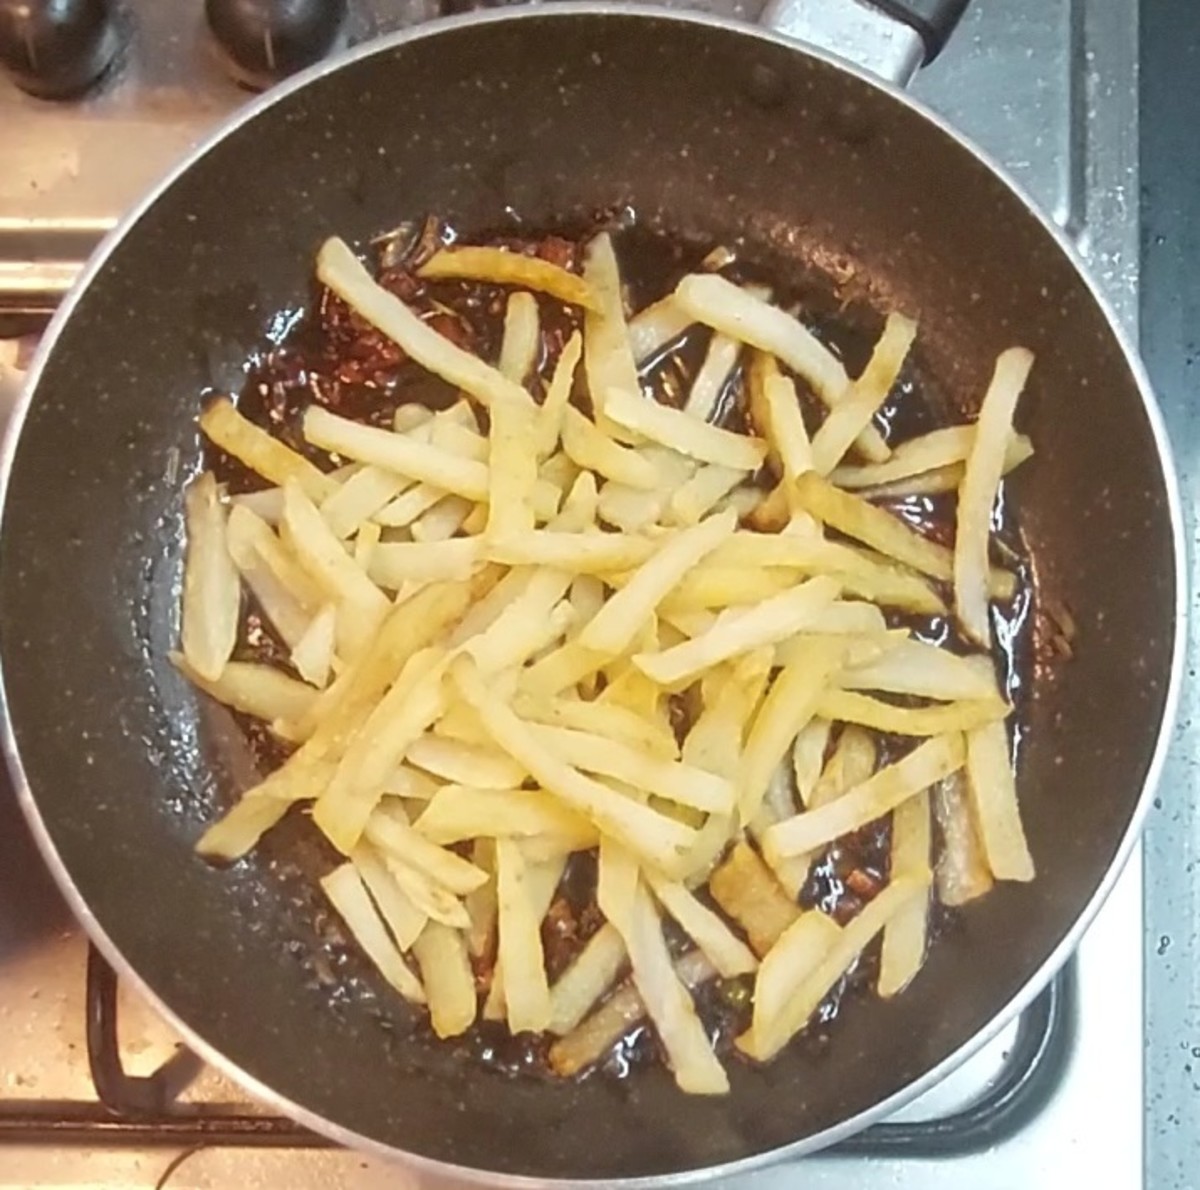 Add fried potatoes.